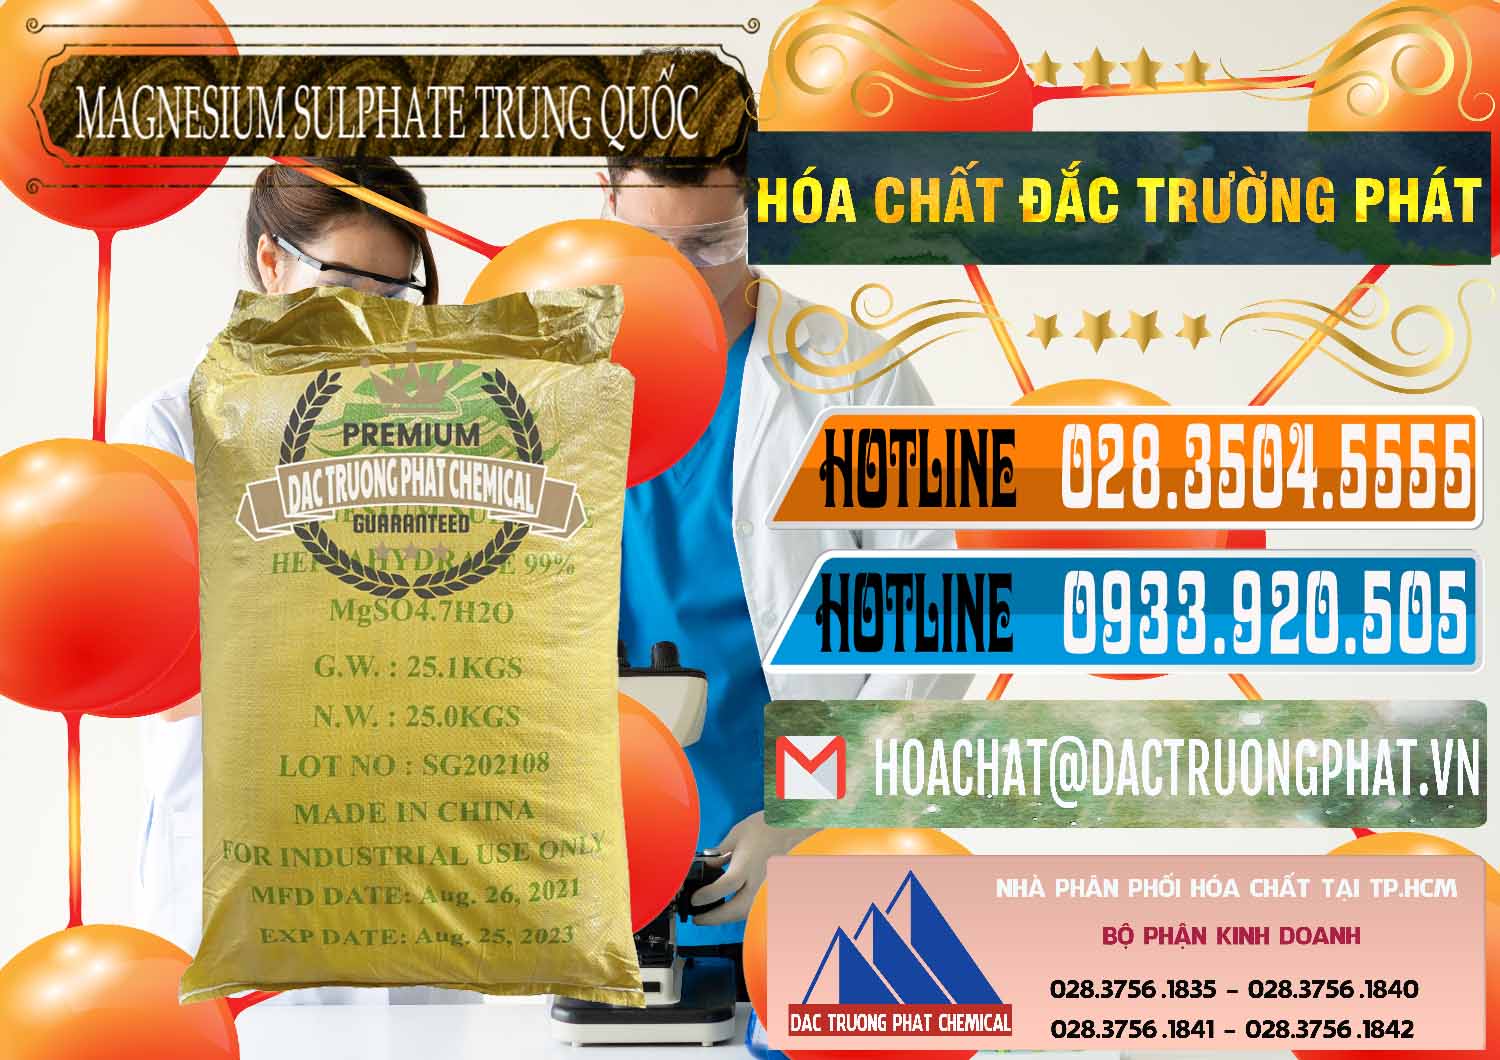 Đơn vị chuyên bán _ phân phối MGSO4.7H2O – Magnesium Sulphate Heptahydrate 99% Trung Quốc China - 0440 - Cty chuyên cung cấp và kinh doanh hóa chất tại TP.HCM - stmp.net